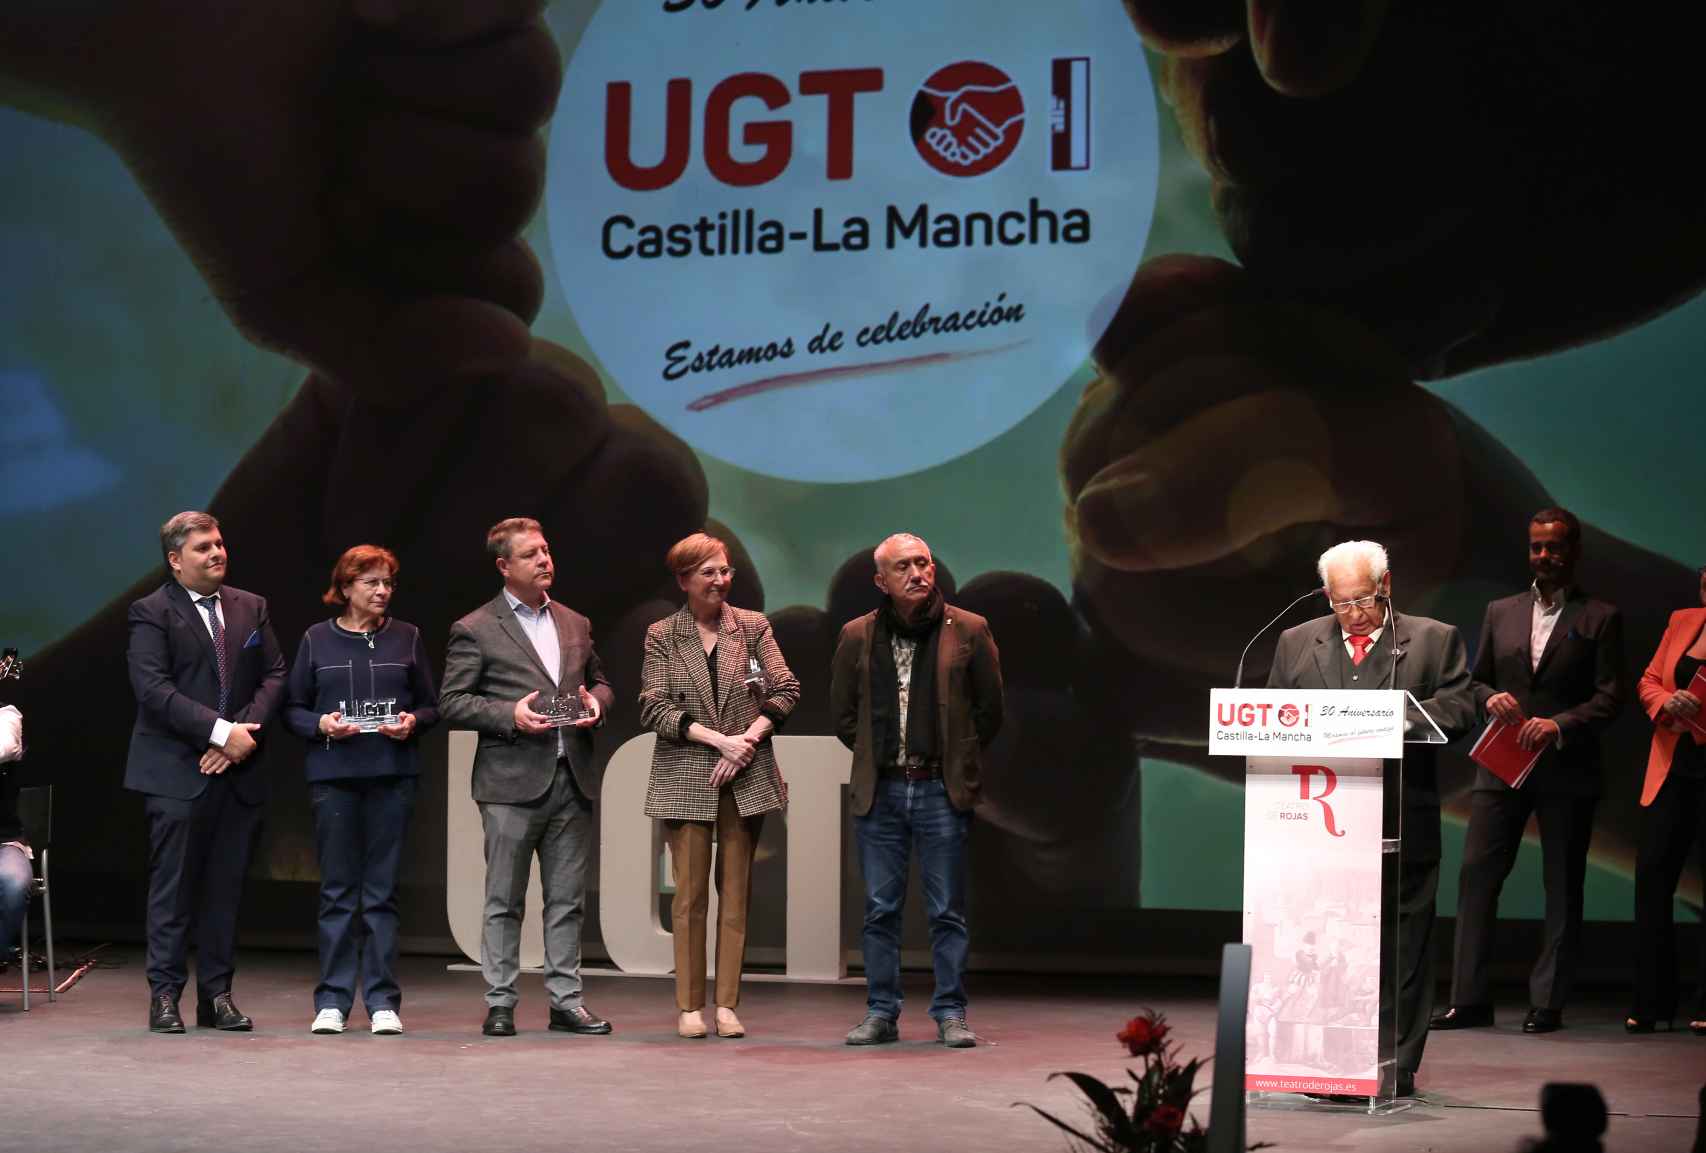 Acto de conmemoración del 30 aniversario de UGT Castilla-La Mancha. Foto: Óscar Huertas.